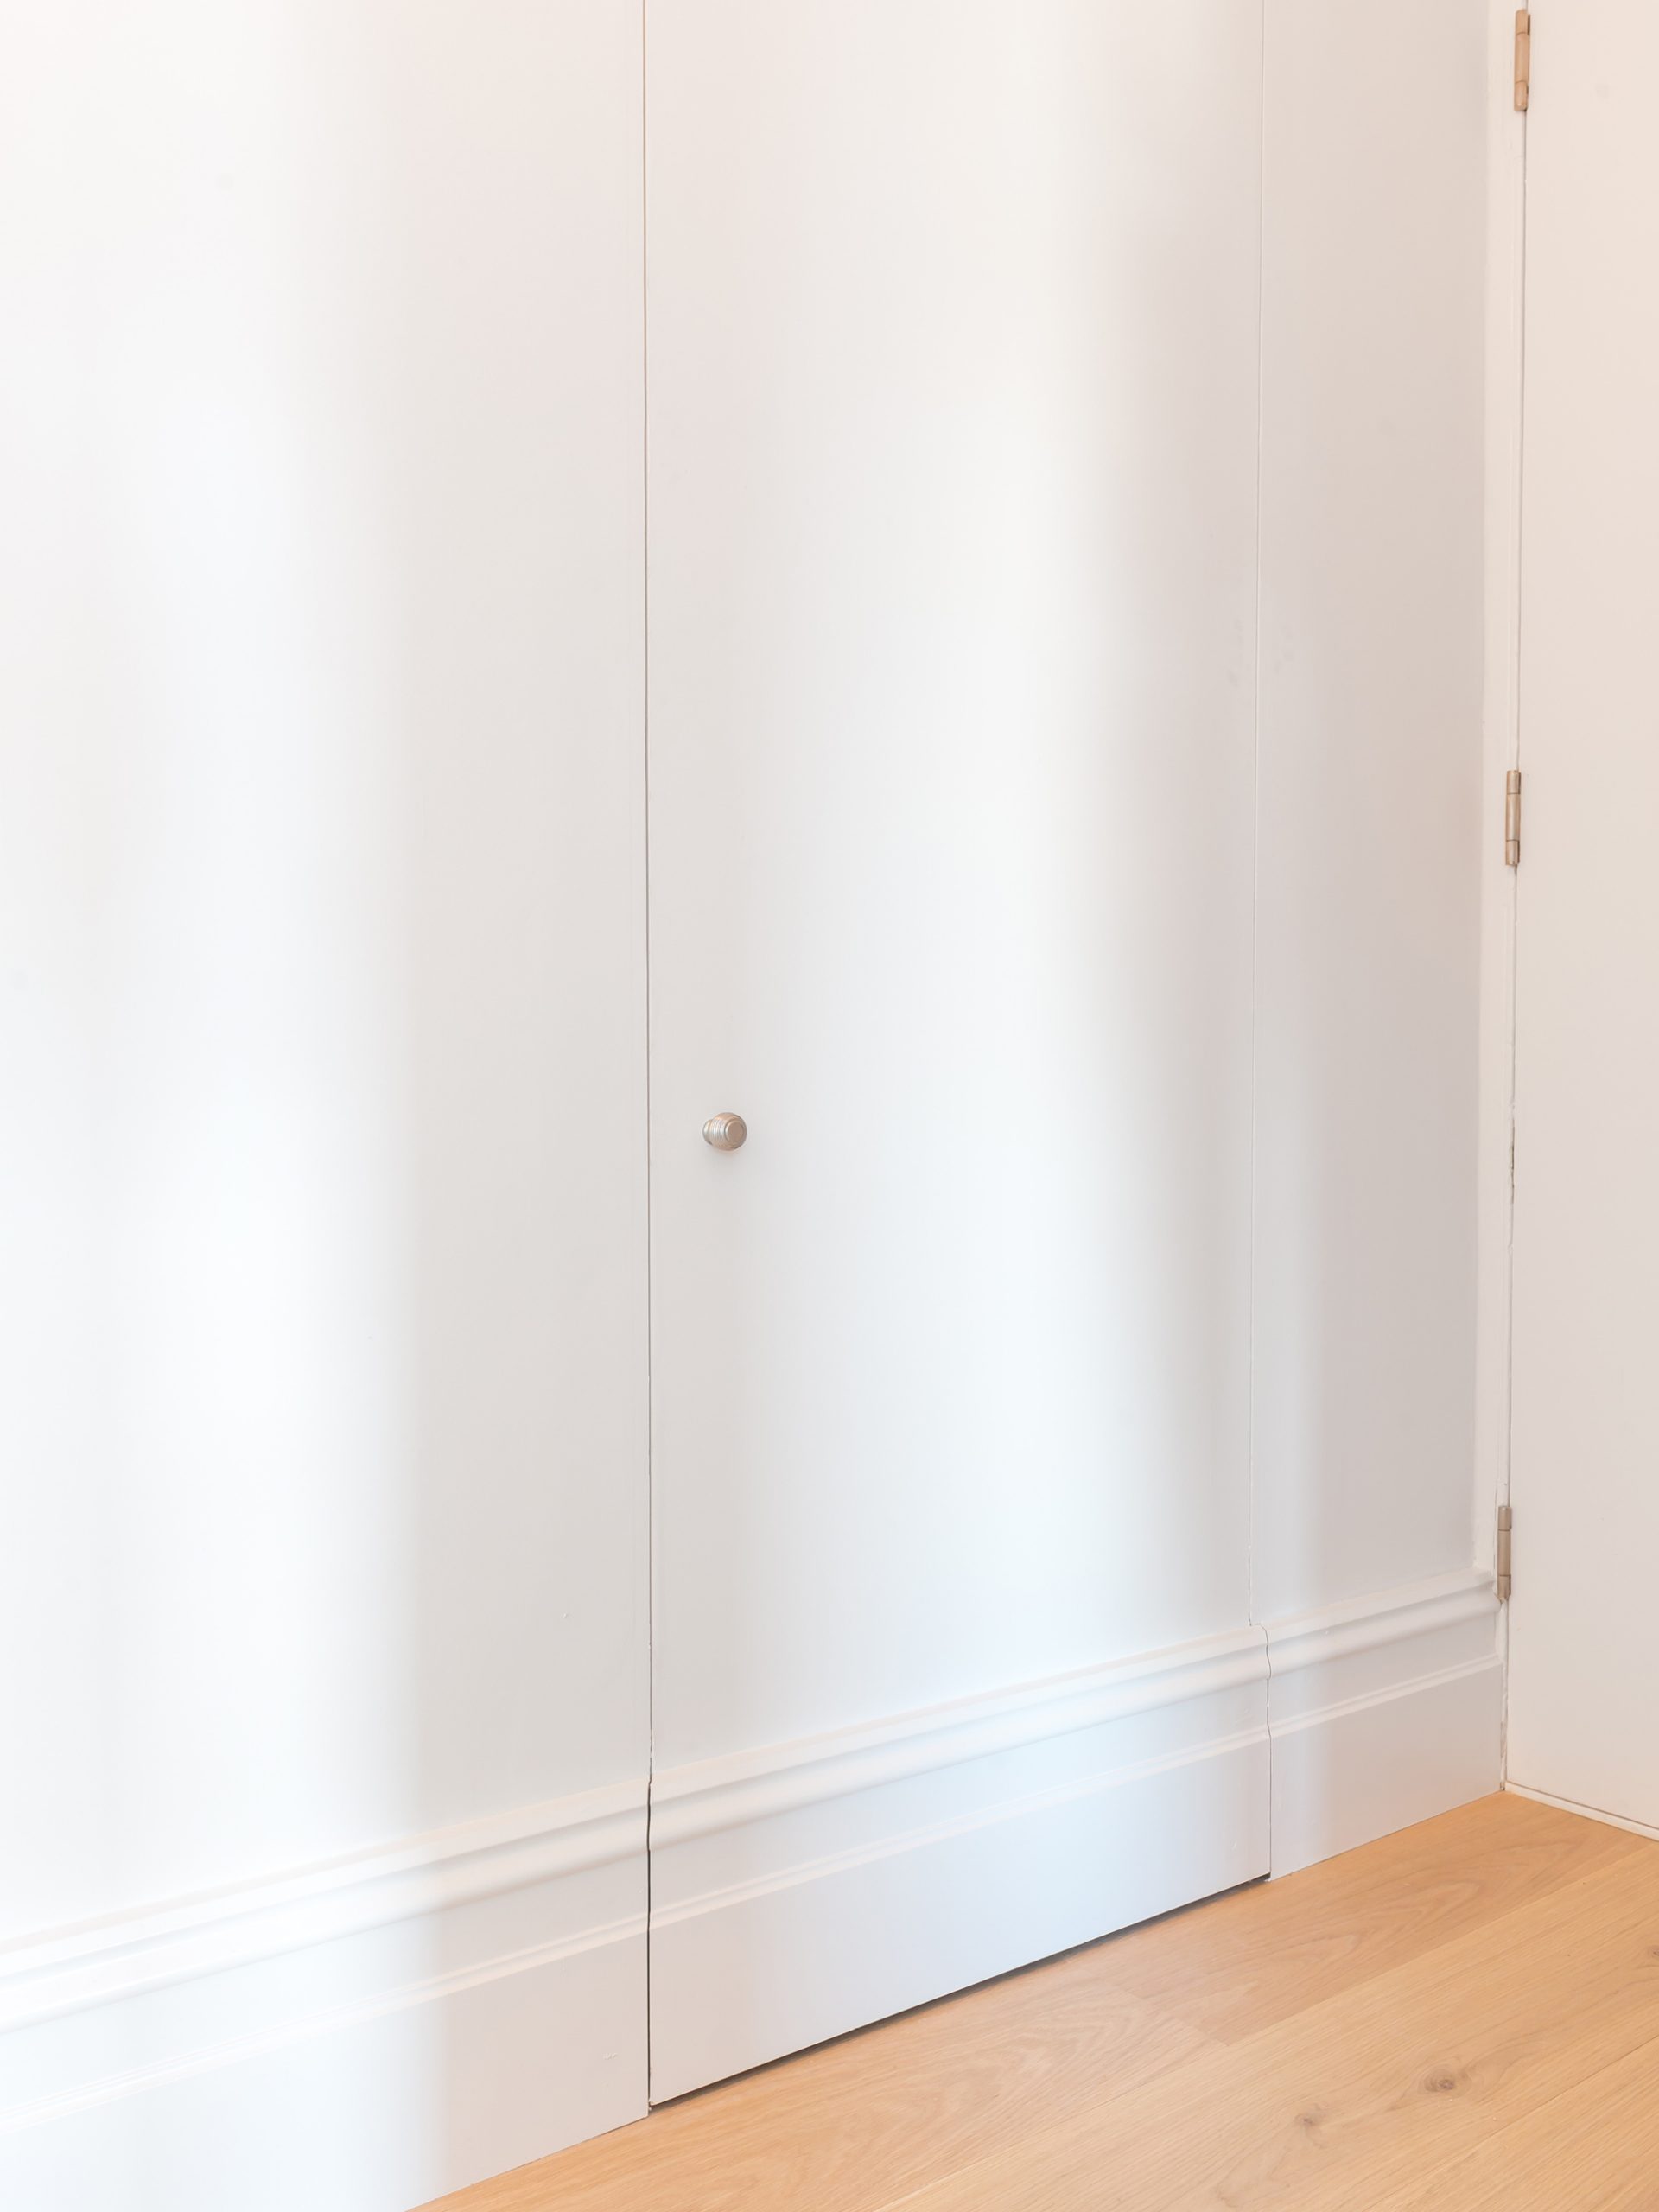 Bloomsbury Apartment - Hallway - Pivot door to cloaks cupboard - Closed